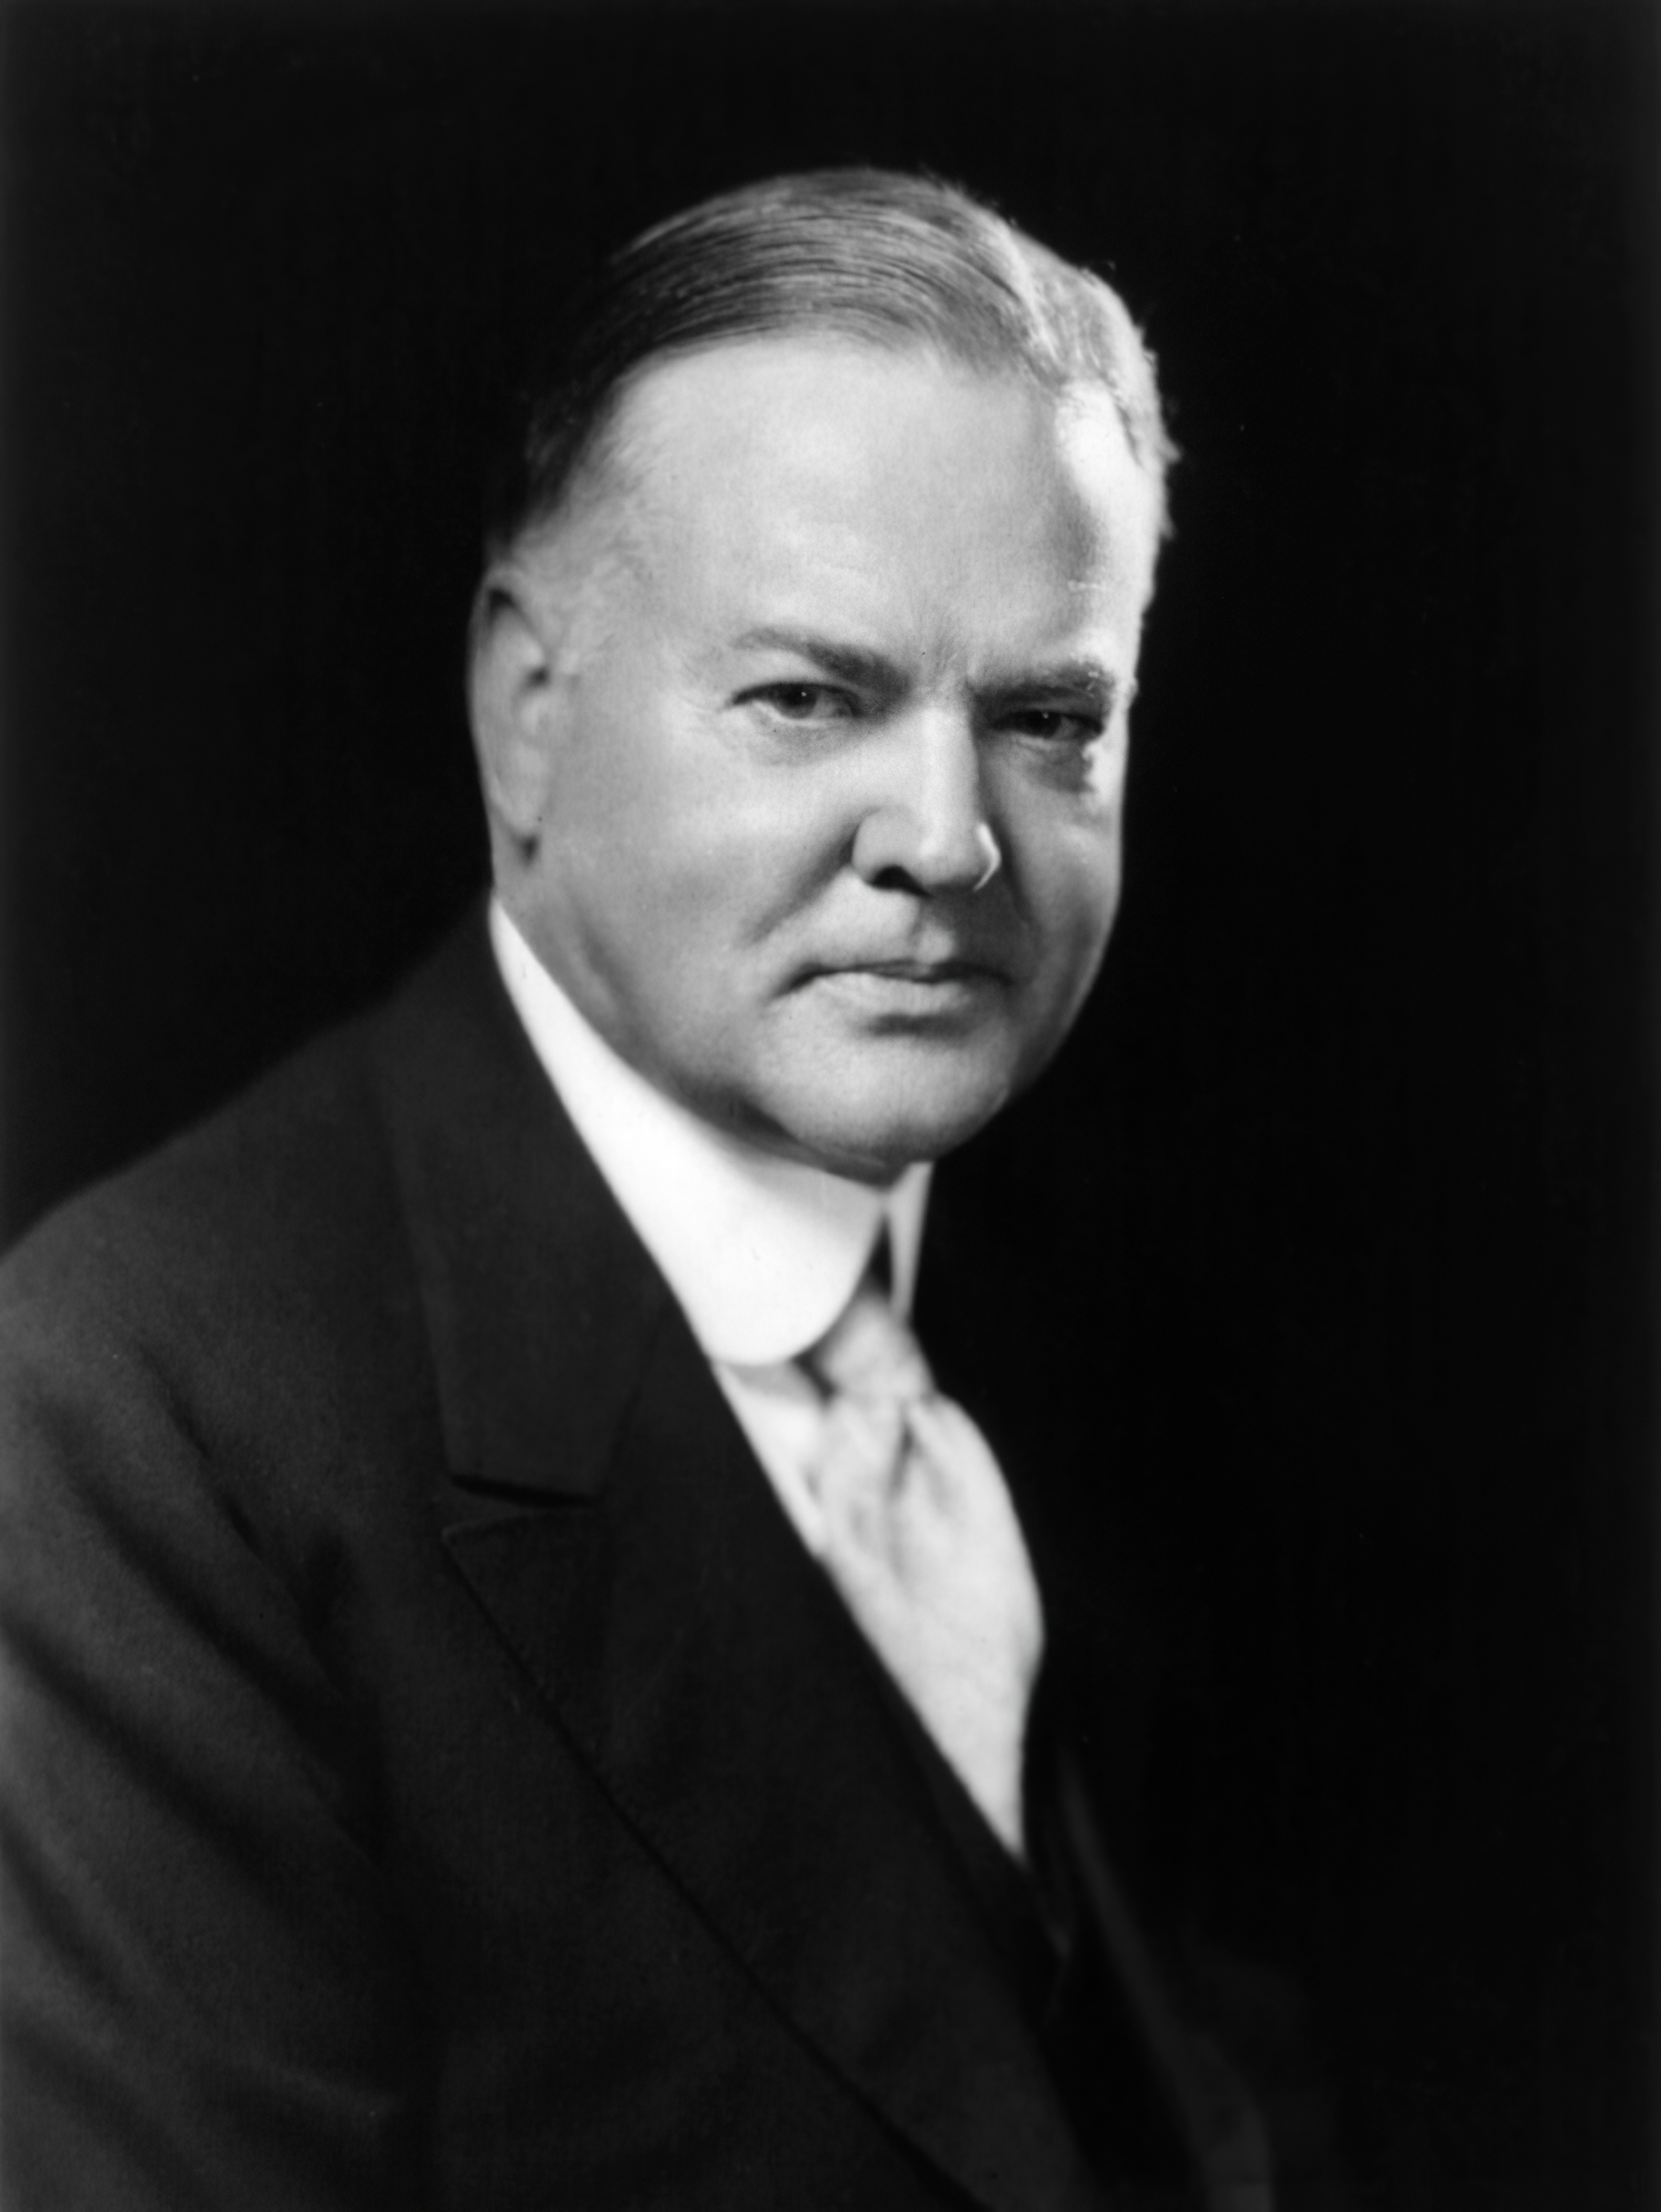 auteur Herbert Hoover de la citation Pour l'ingénieur, il faut des vêtements les ossements nus de la science avec la vie, le confort et l'espoir.